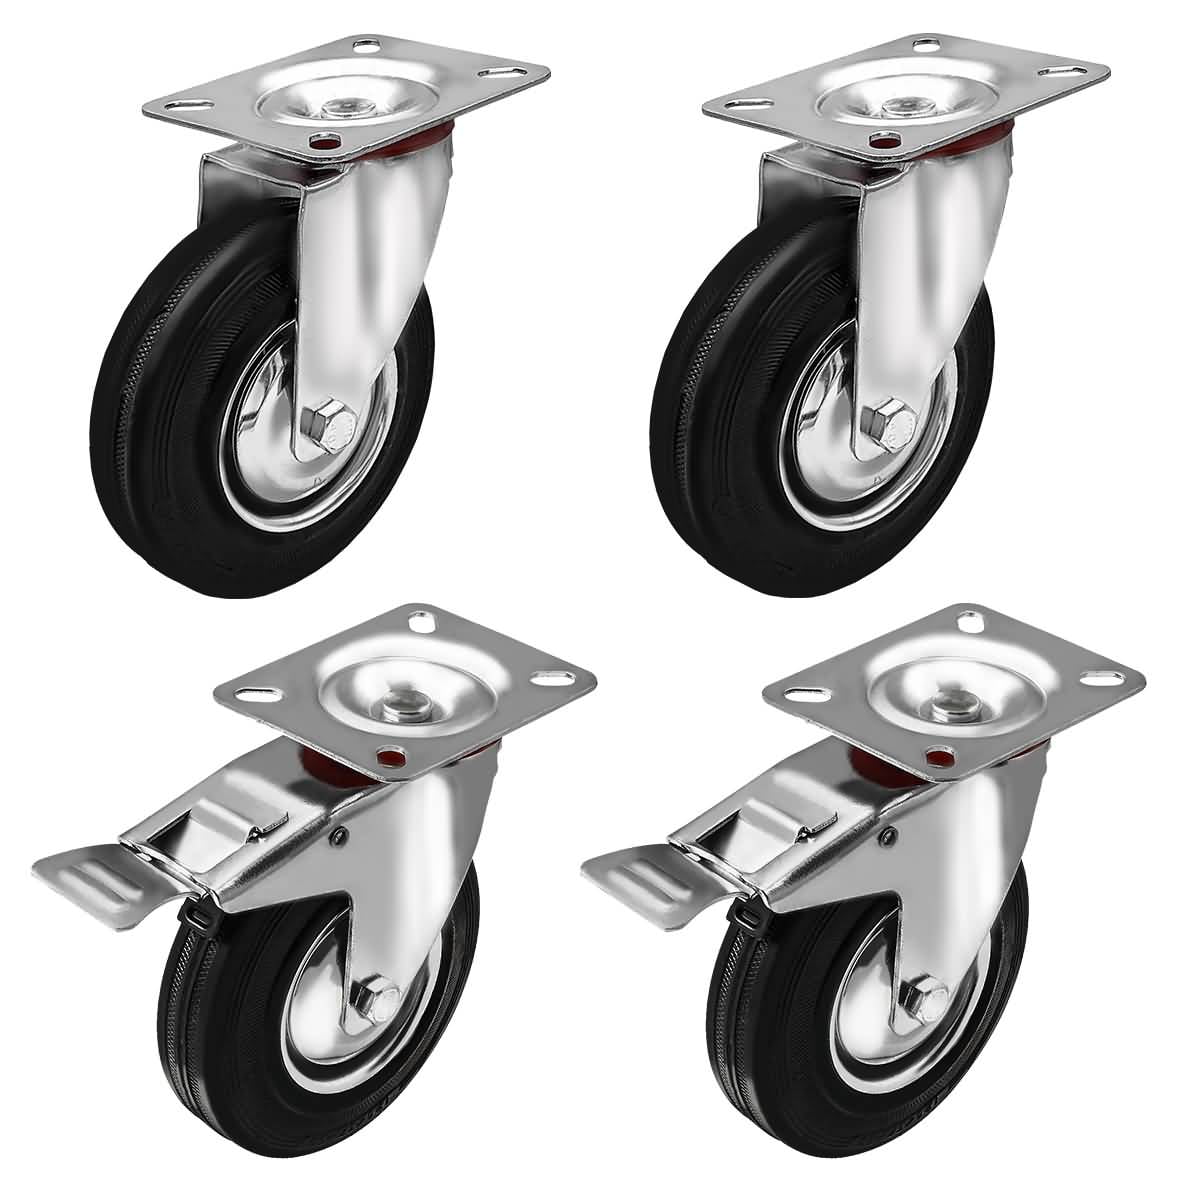 100mm 4" 4 inch rubber wheels steel centered wheels heavy duty set of 4 